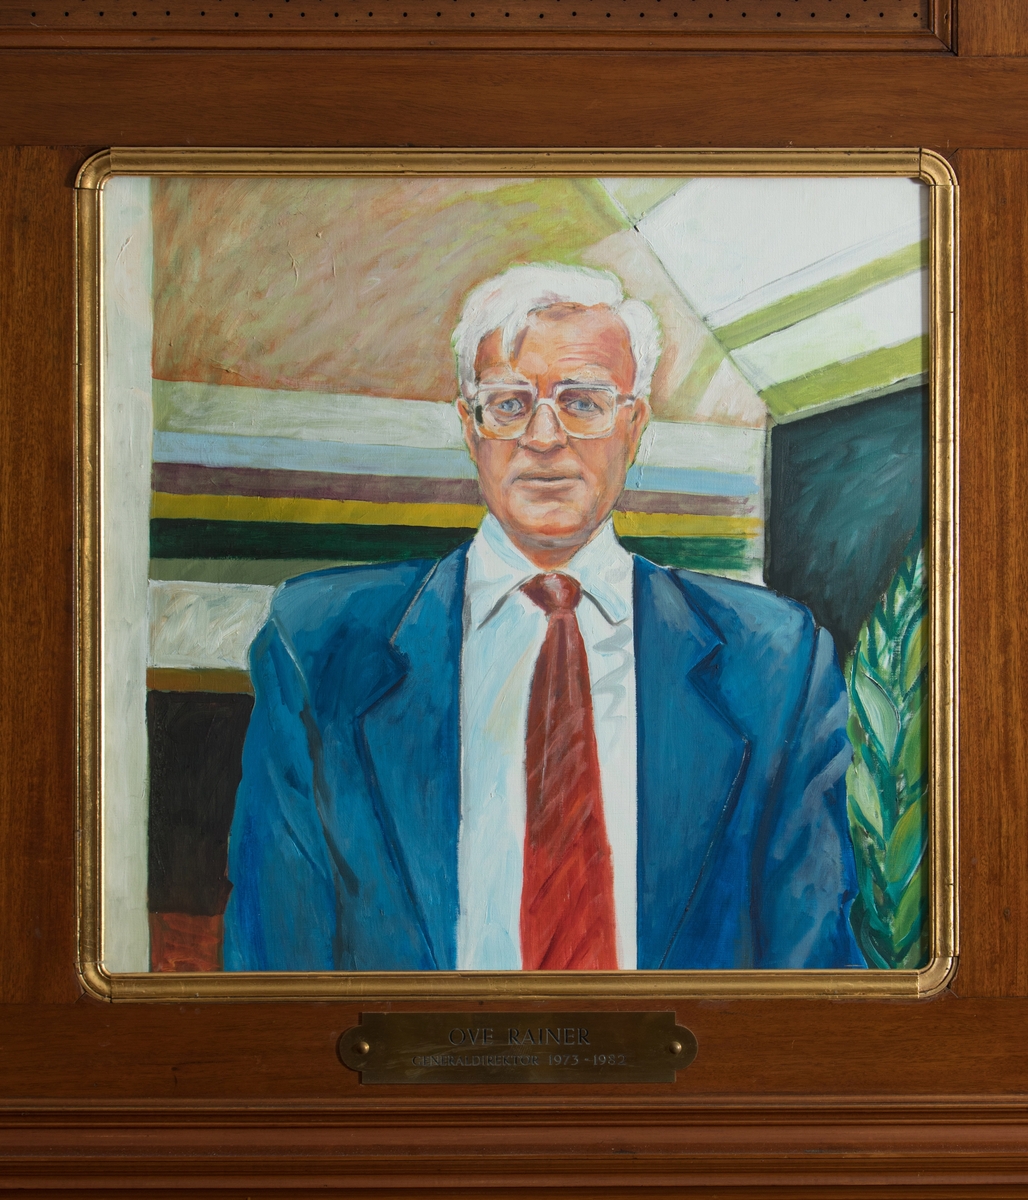 Porträtt i olja av Generaldirektör Ove Rainer.

Duken är fäst på en träskiva. En mässingsskylt med text: "Ove Rainer
Generaldirektör 1973-1982" tillhör.